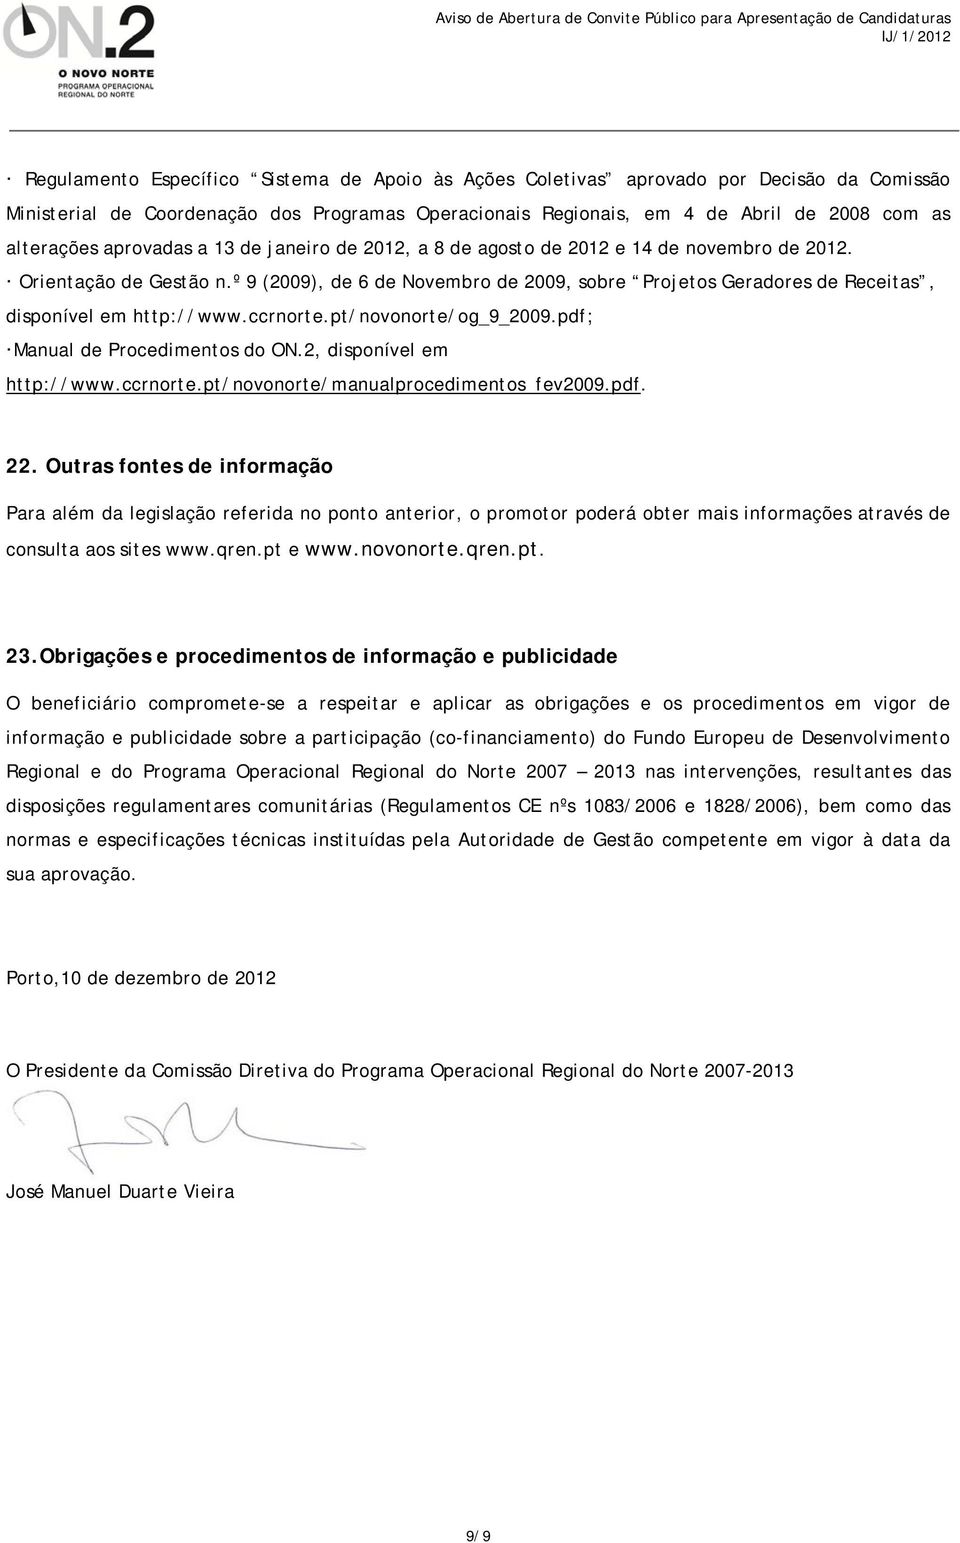 º 9 (2009), de 6 de Novembro de 2009, sobre Projetos Geradores de Receitas, disponível em http://www.ccrnorte.pt/novonorte/og_9_2009.pdf; Manual de Procedimentos do ON.2, disponível em http://www.